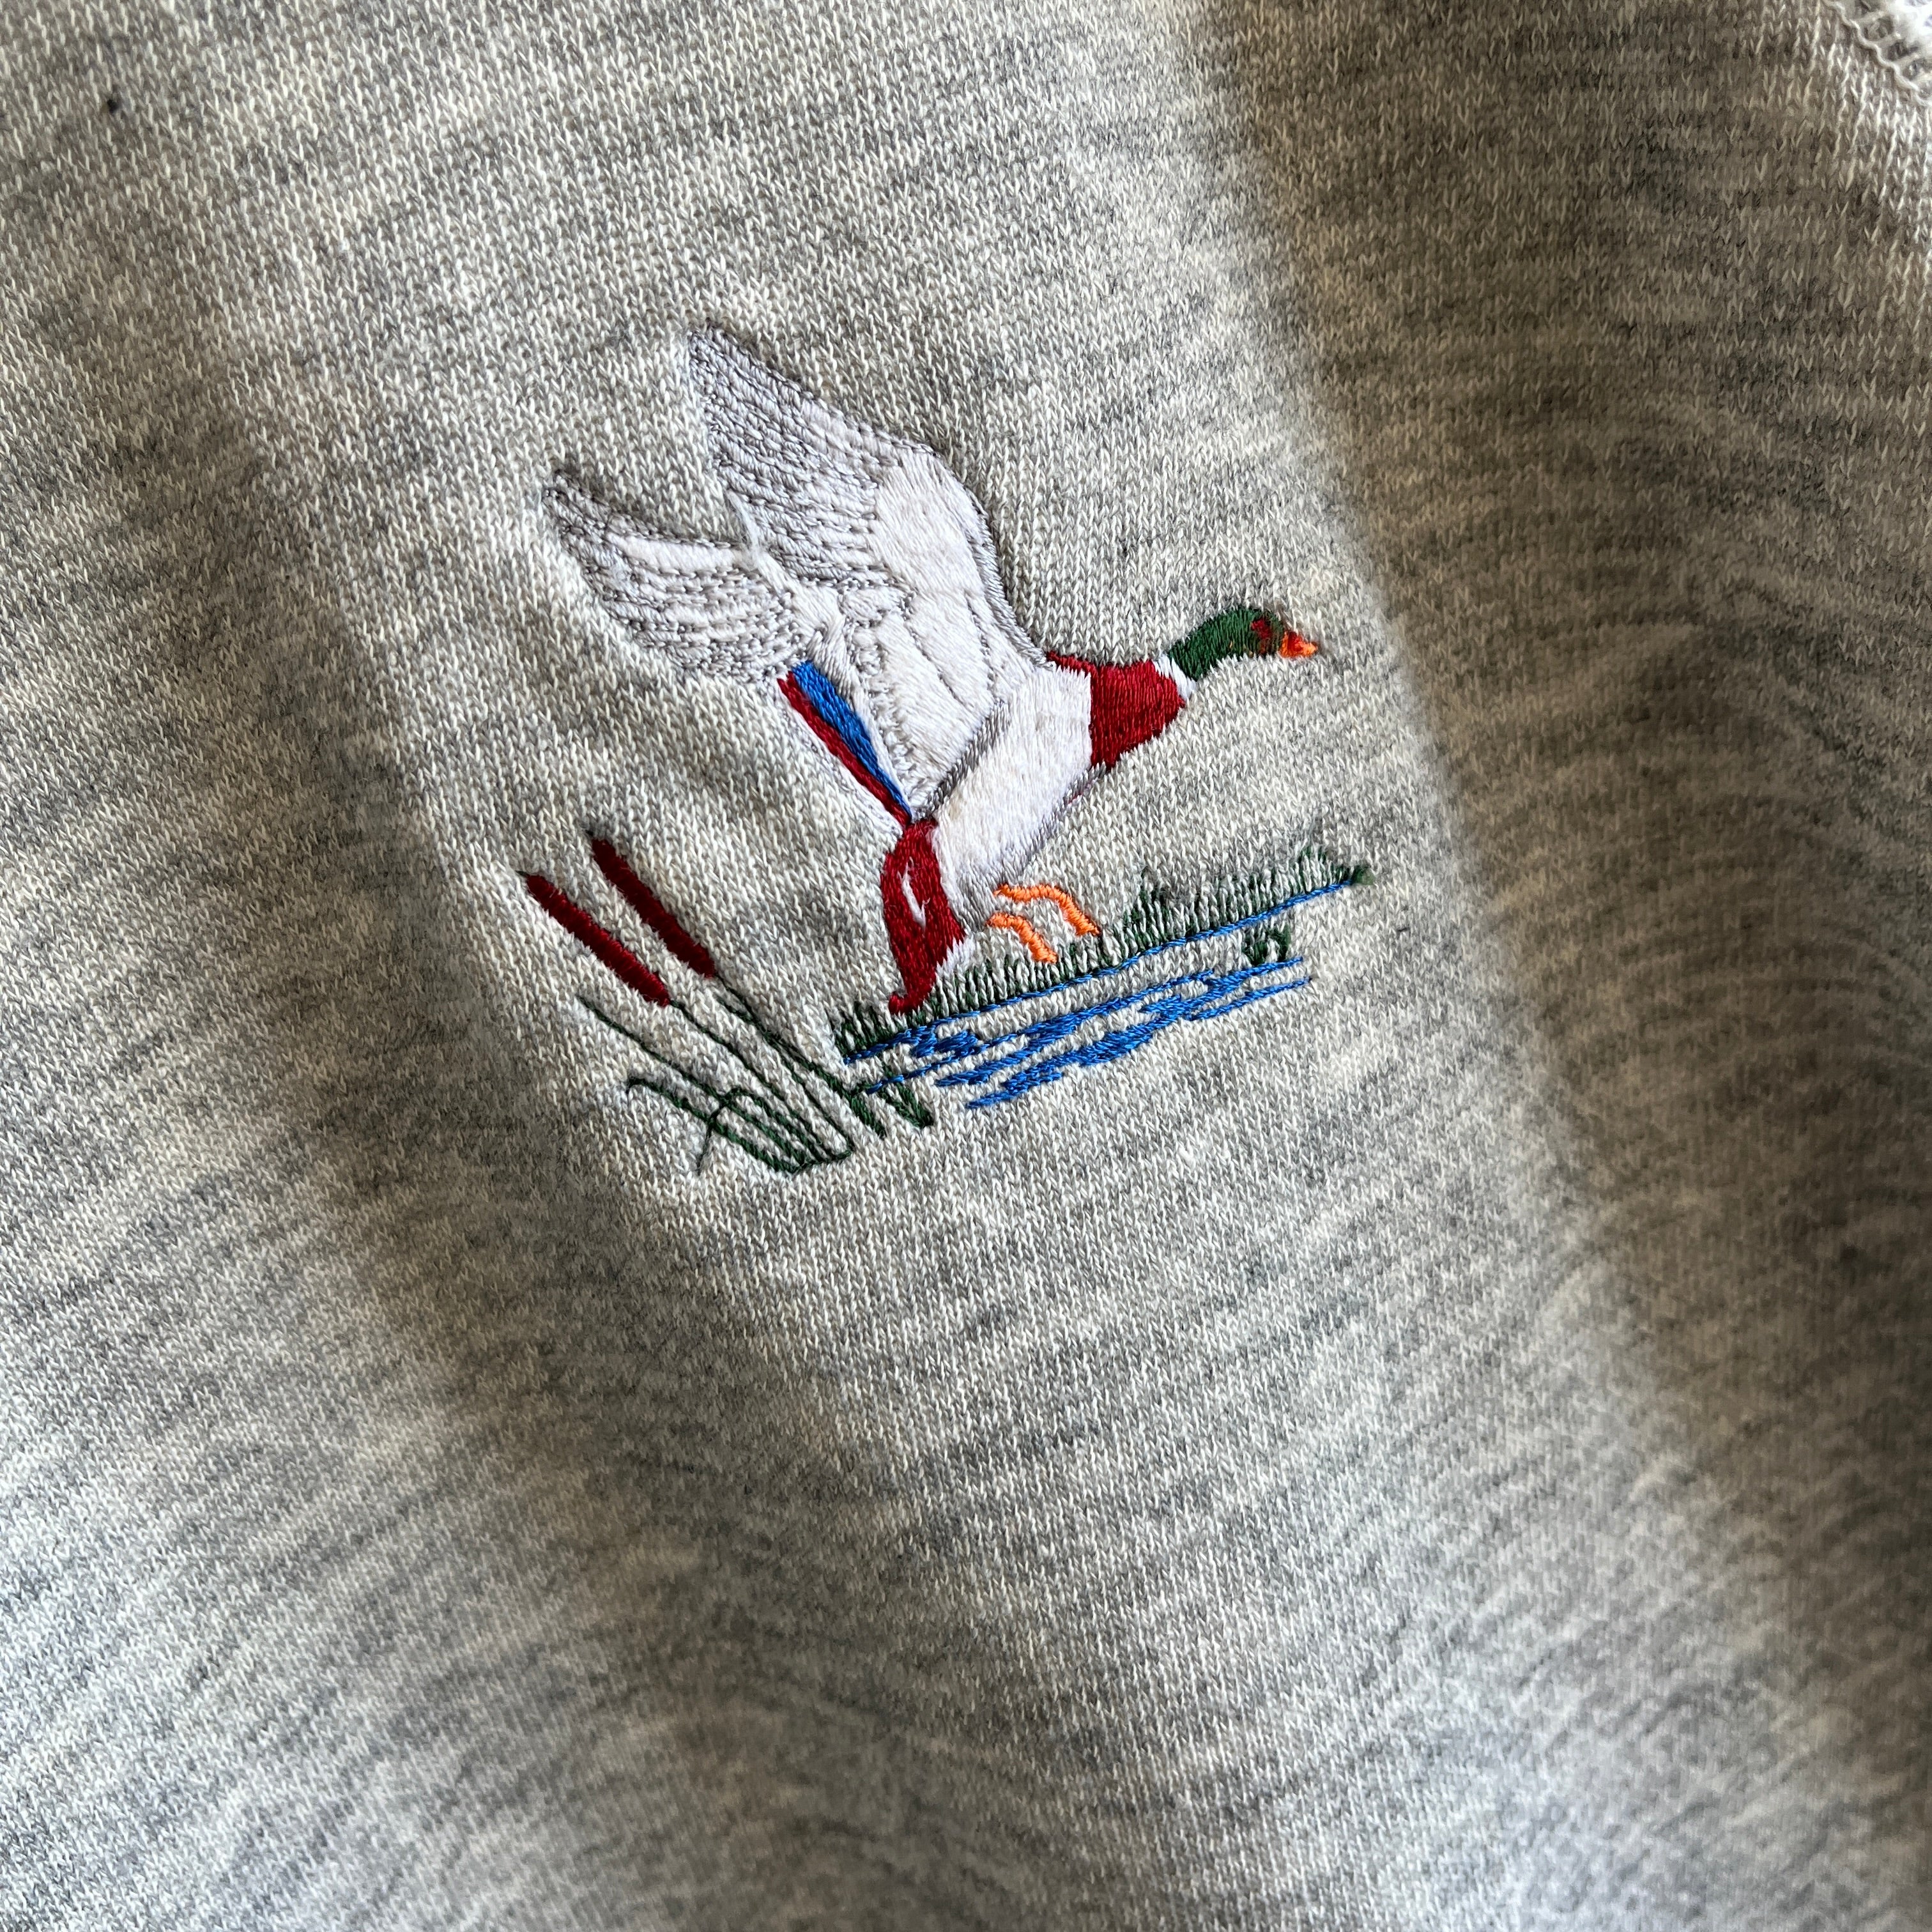 1980s Embroidered Flying Duck Sweatshirt